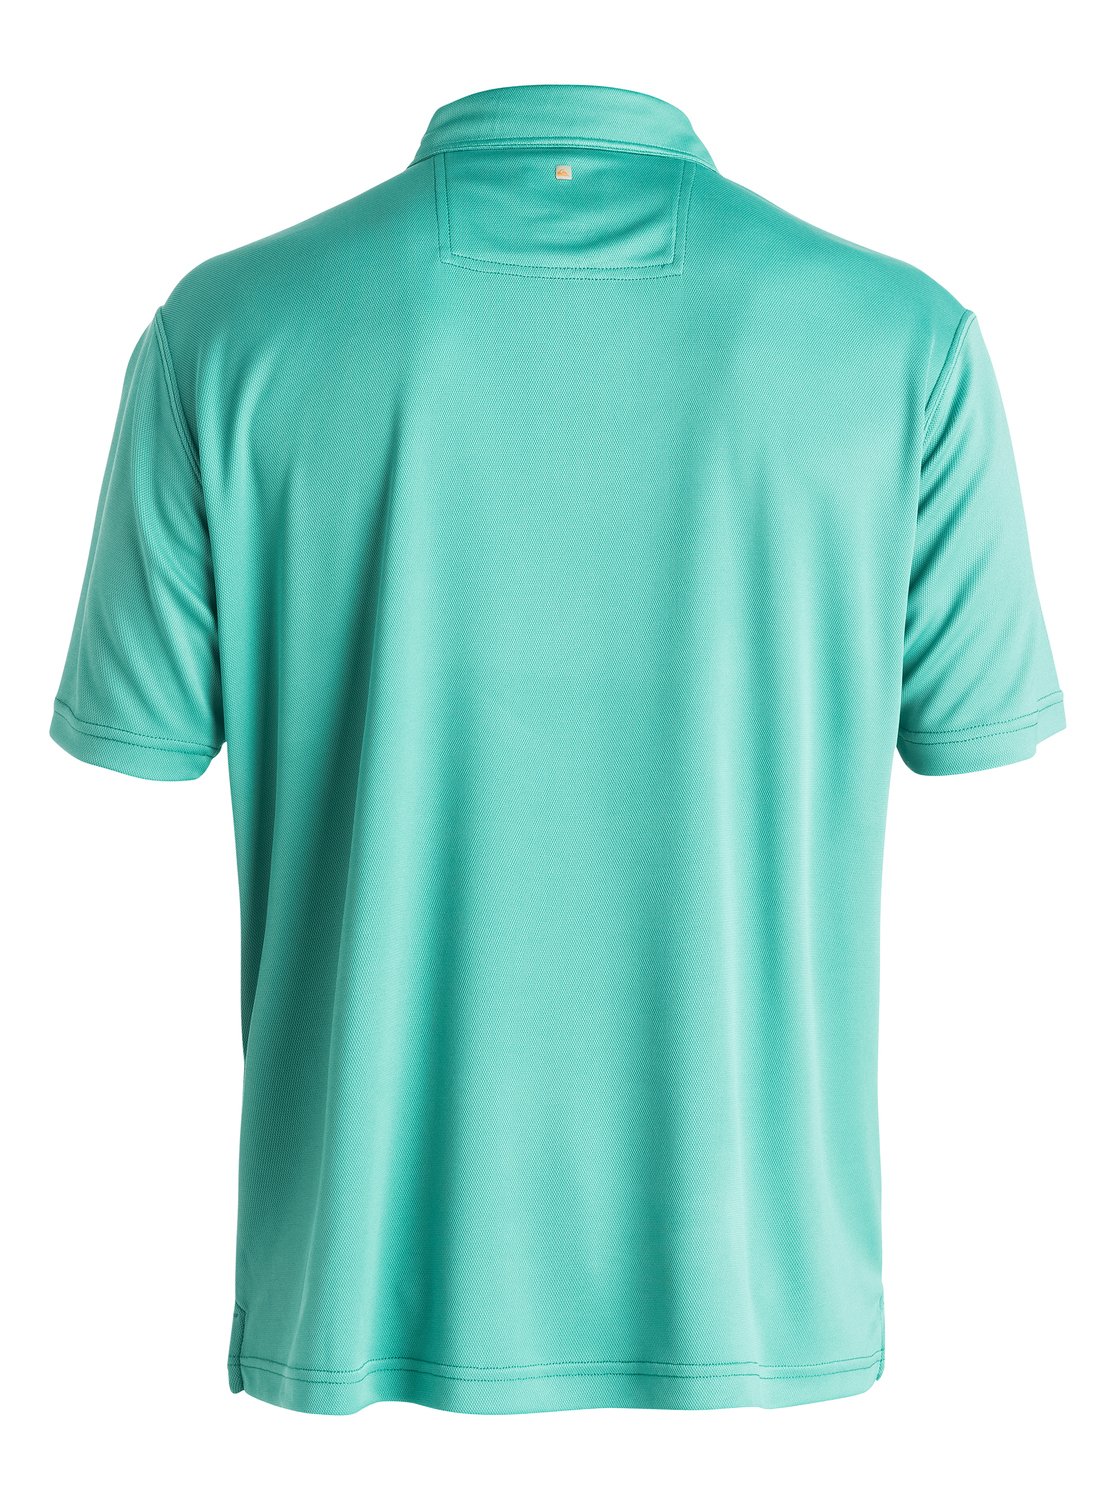 Waterman Water Polo Shirt 889351052735 | Quiksilver